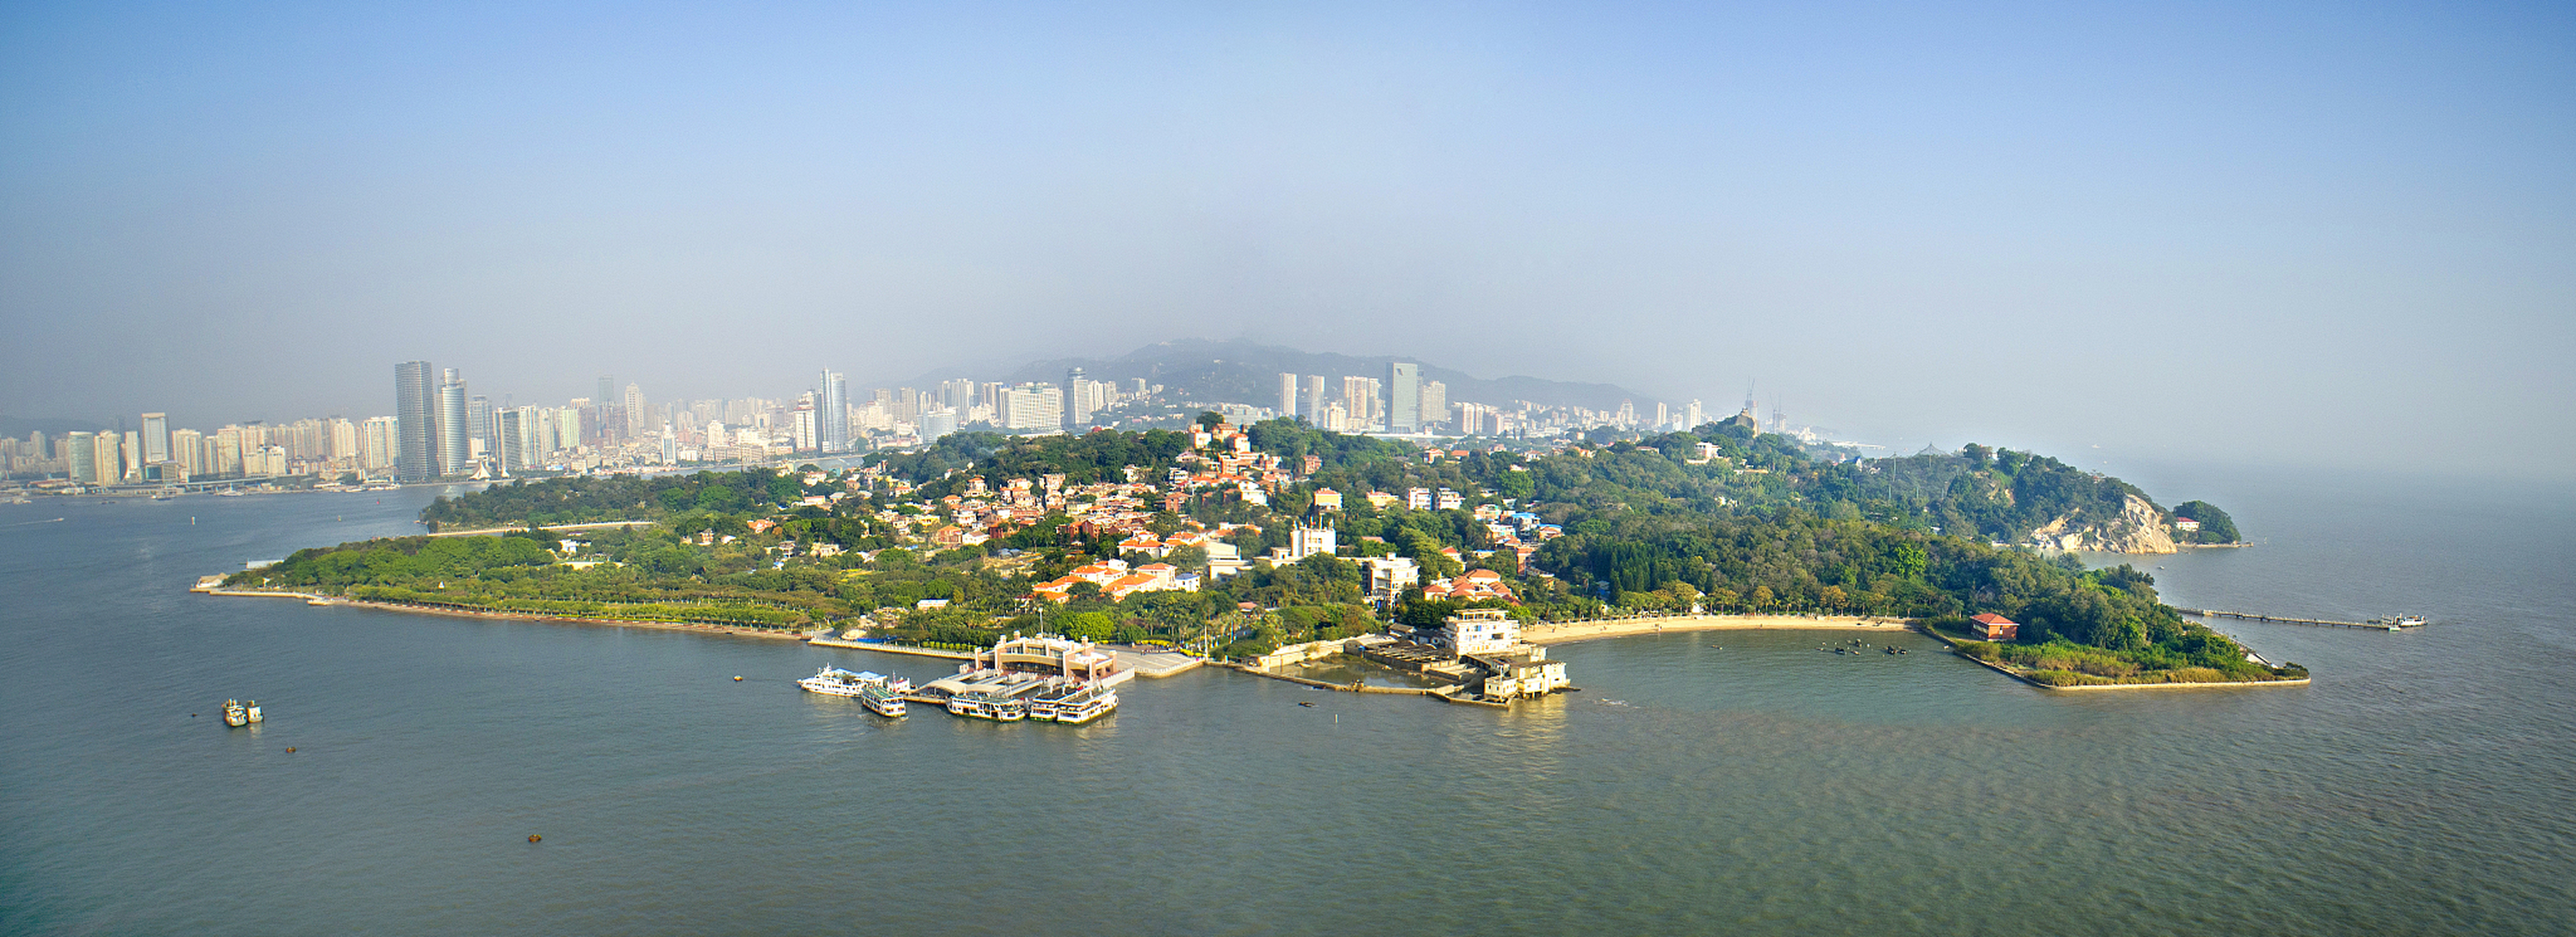 漳州城市景观图片